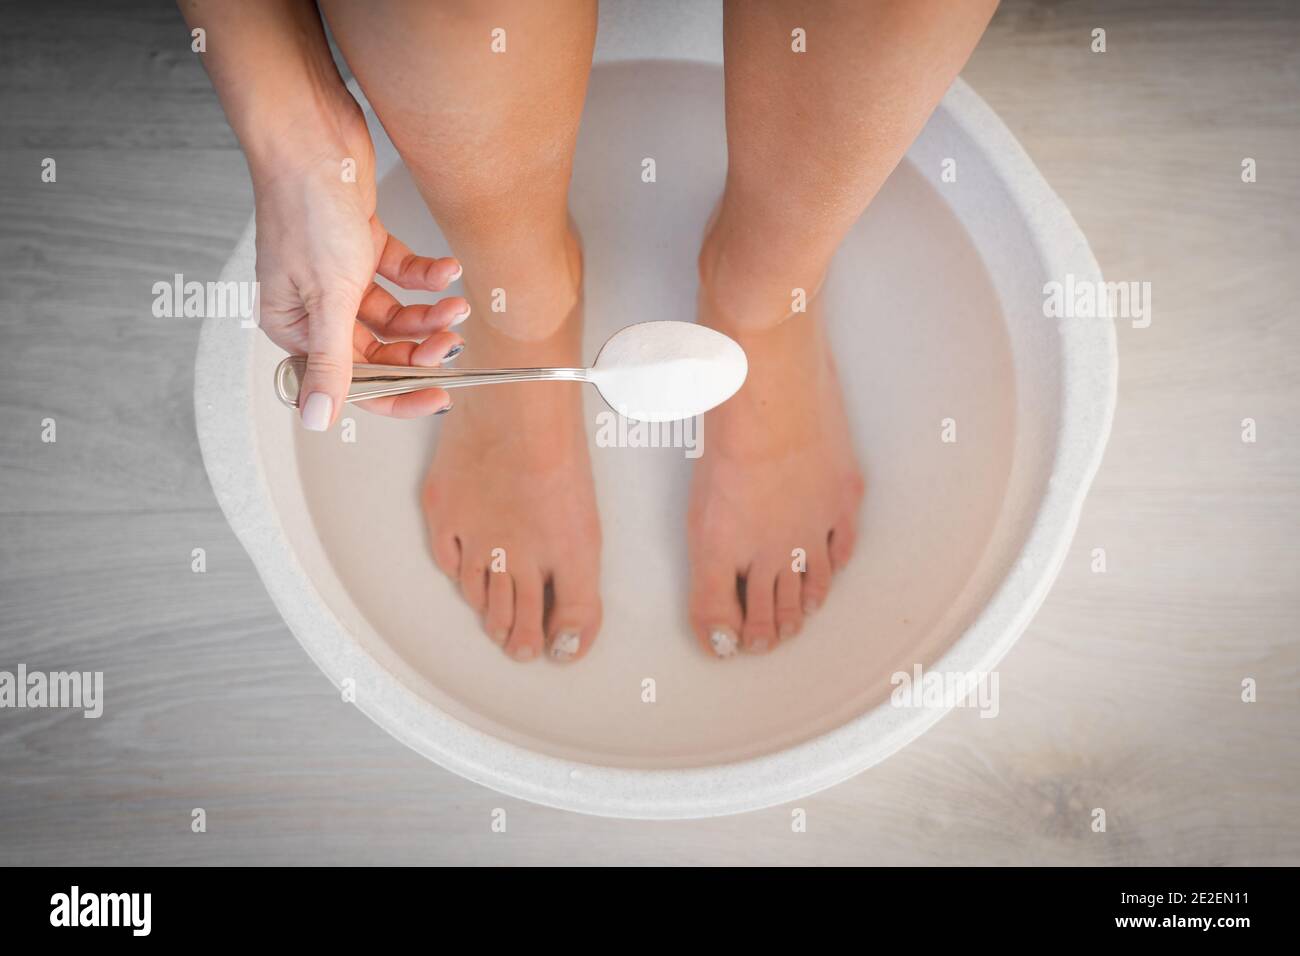 Femme a mis une cuillère de bicarbonate de soude dans le bain avec de l'eau chaude pour ses pieds. Bain maison pour les pieds secs. Banque D'Images